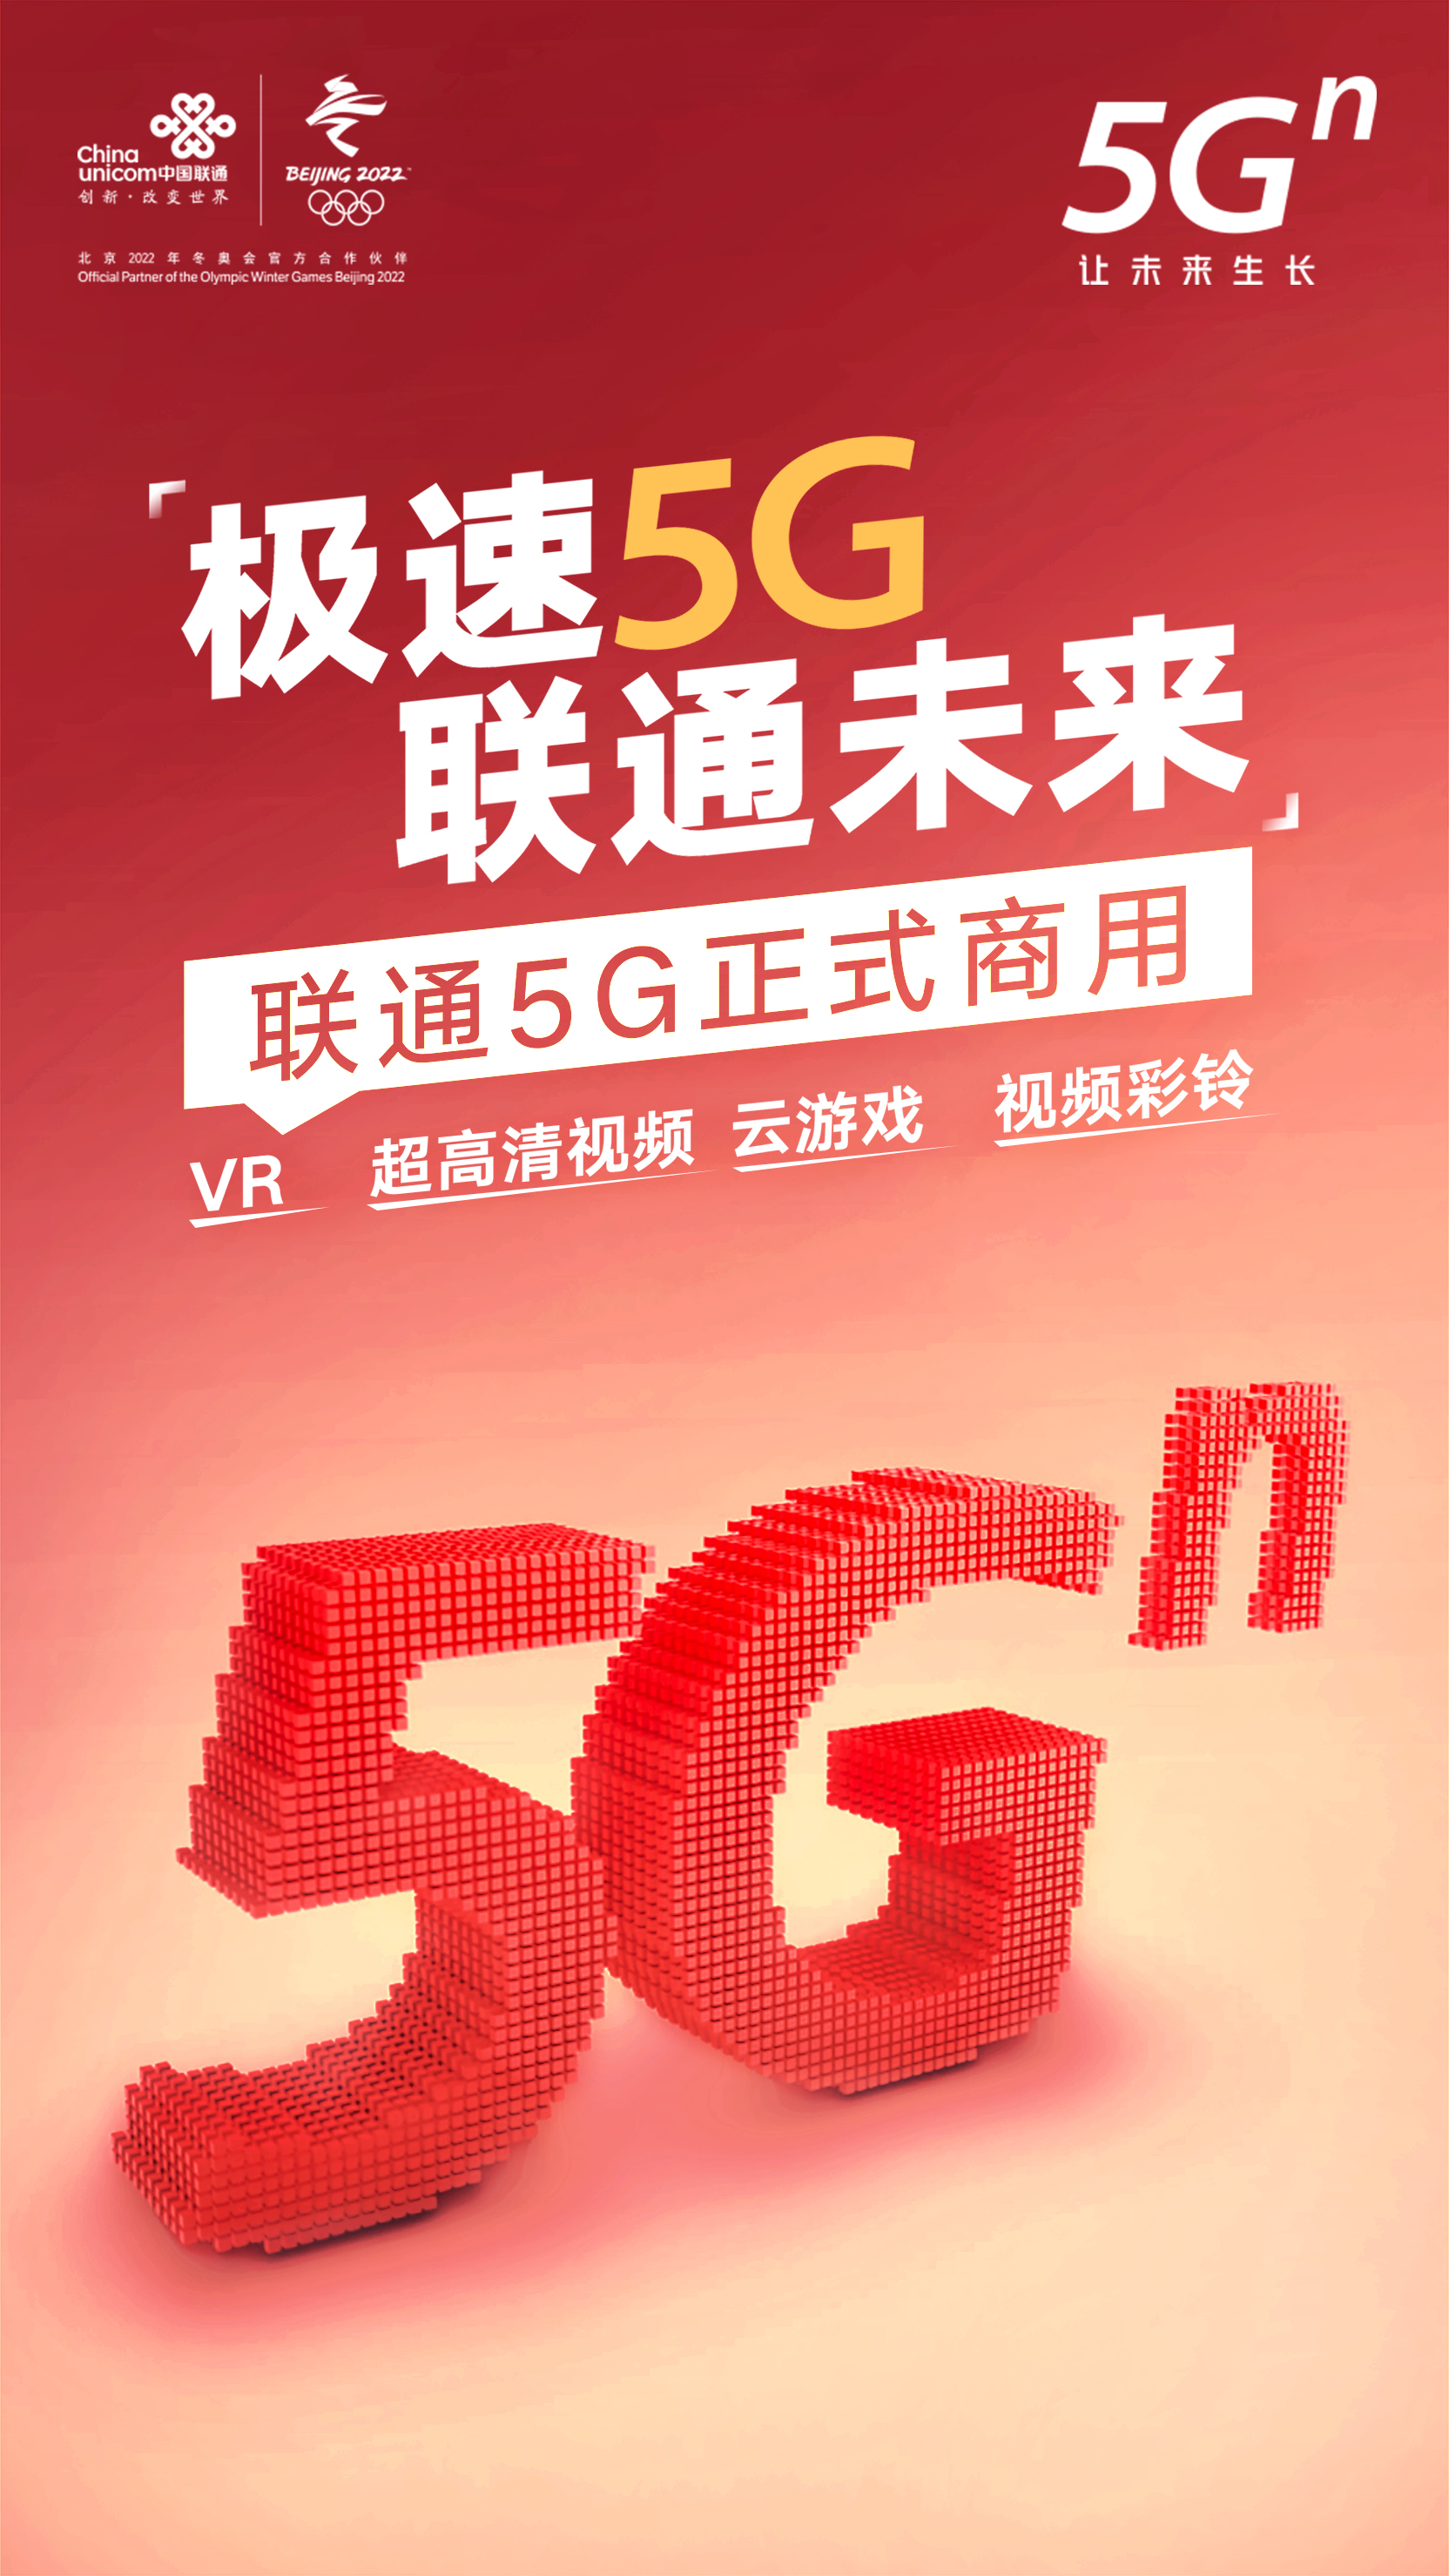 5g商用正式启动 中国联通极速开启智慧未来